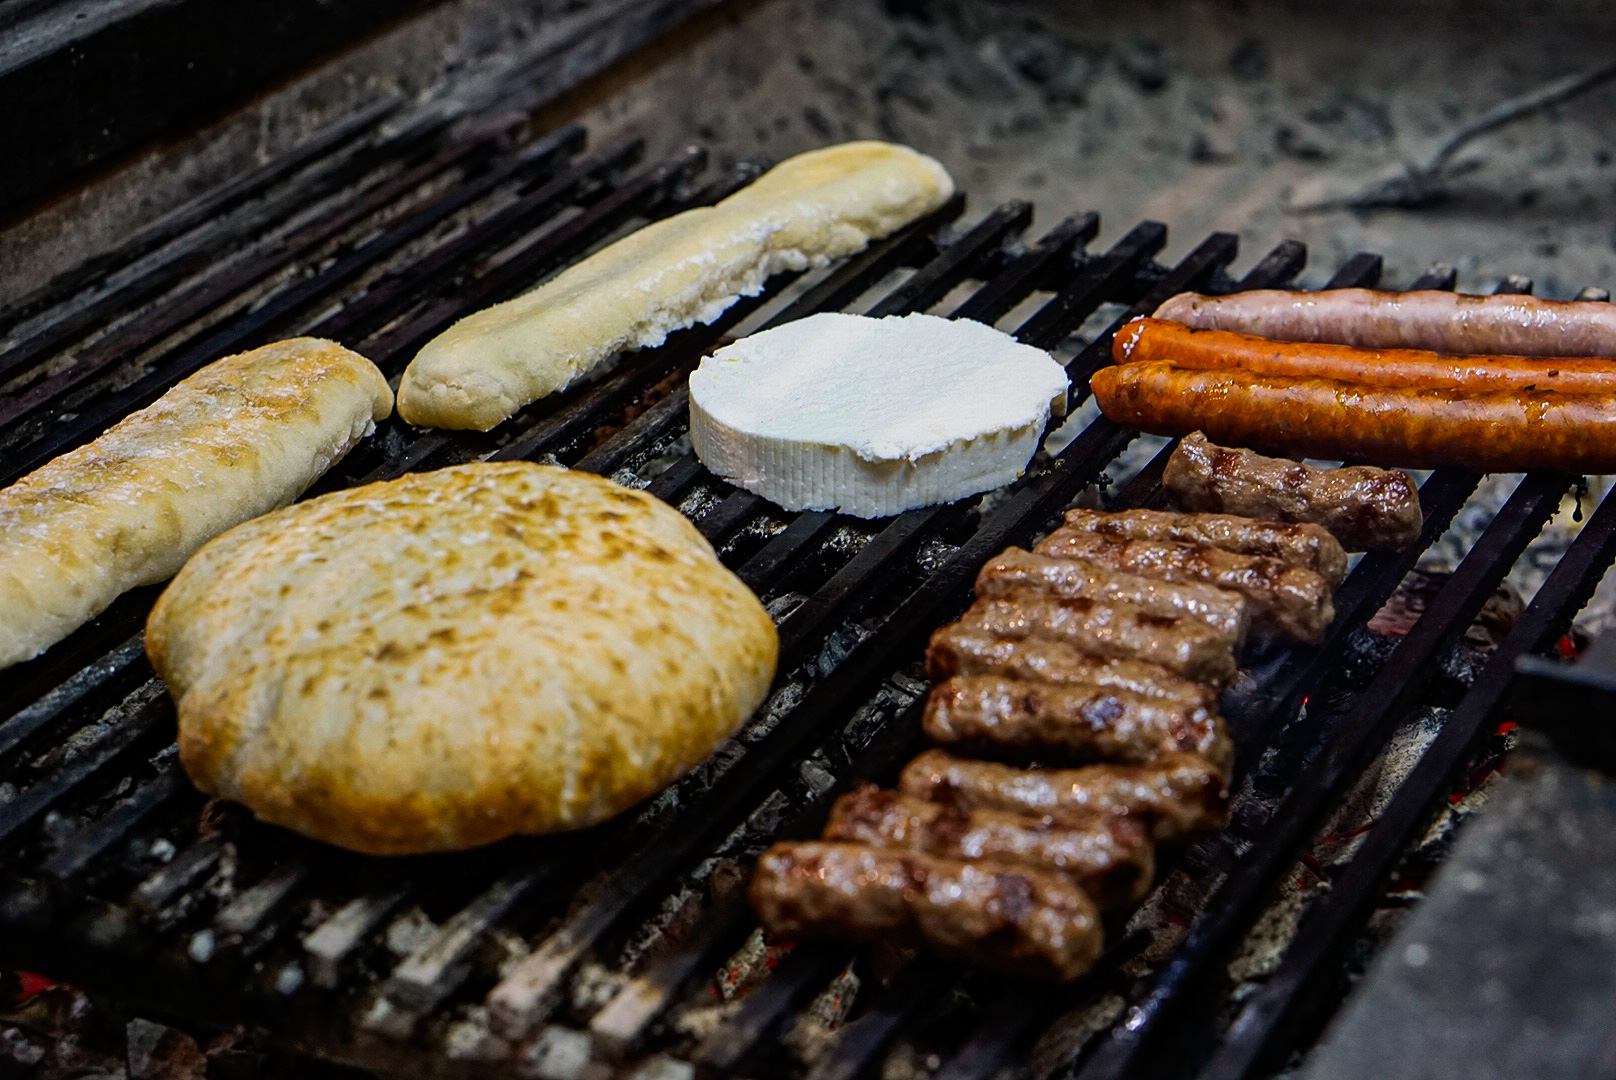 Csevap, pljeskavica, grillburgerek egyszerűen és nagyszerűen – Unkija Grill & Bar